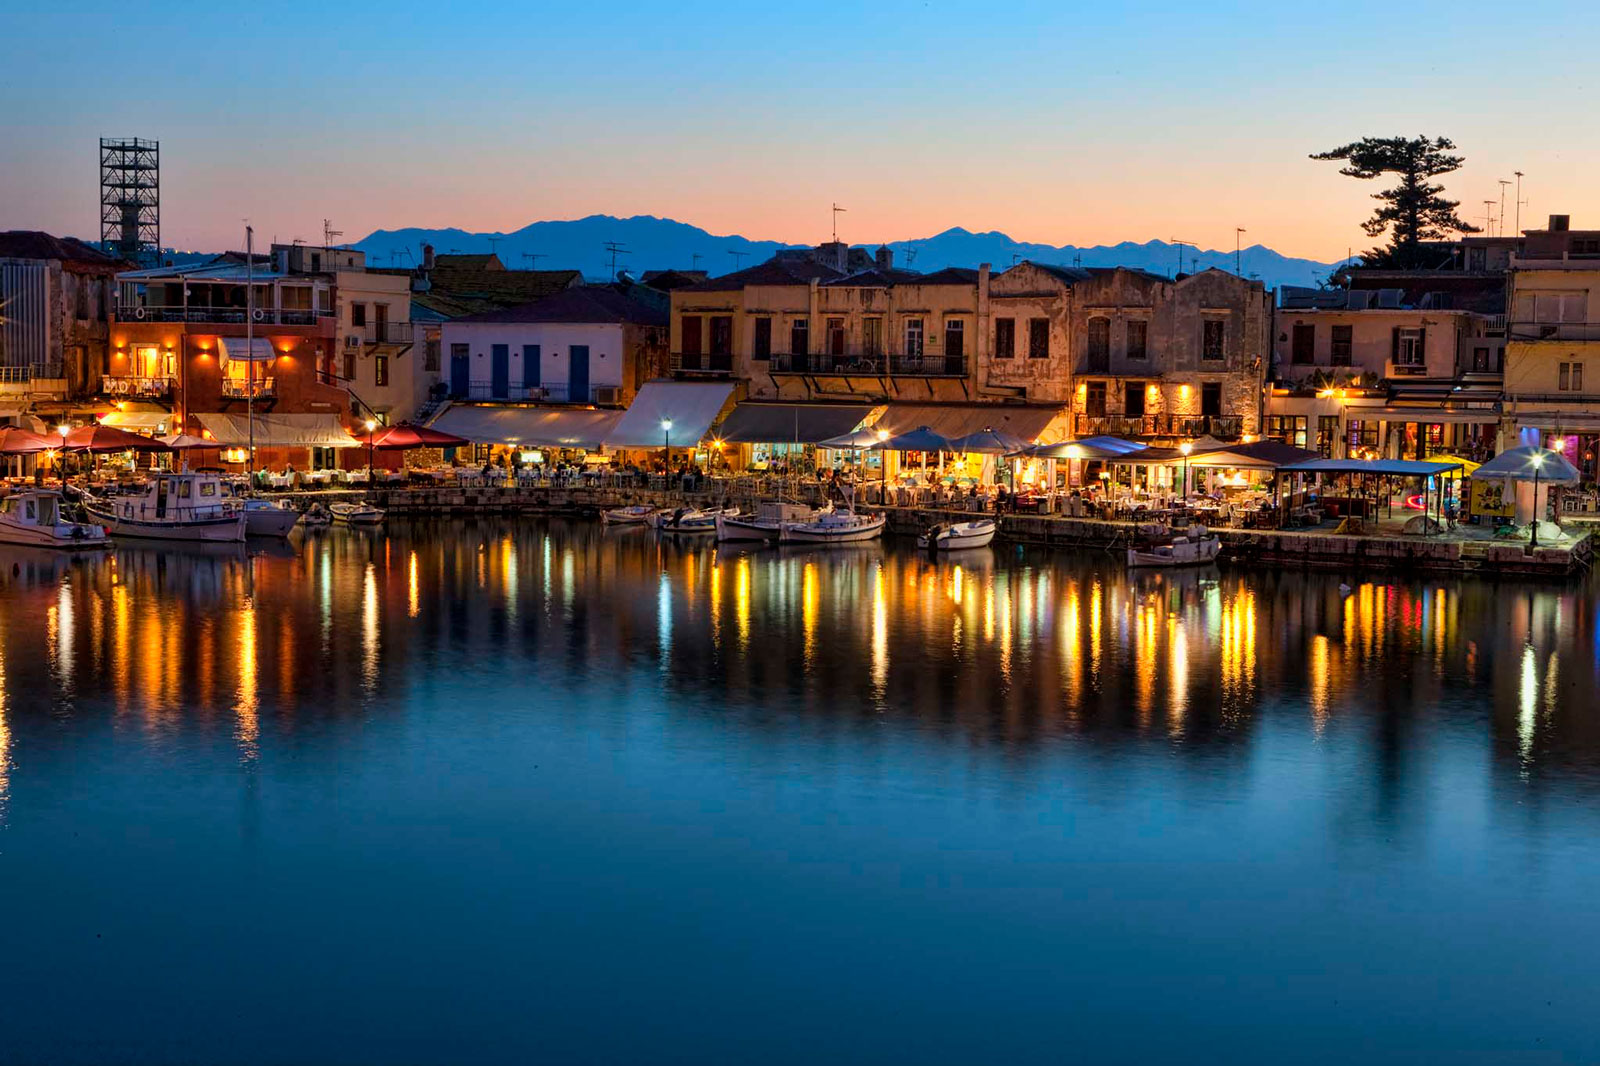 Vacances en Crète – Explorer de nouvelles vacances culturelles